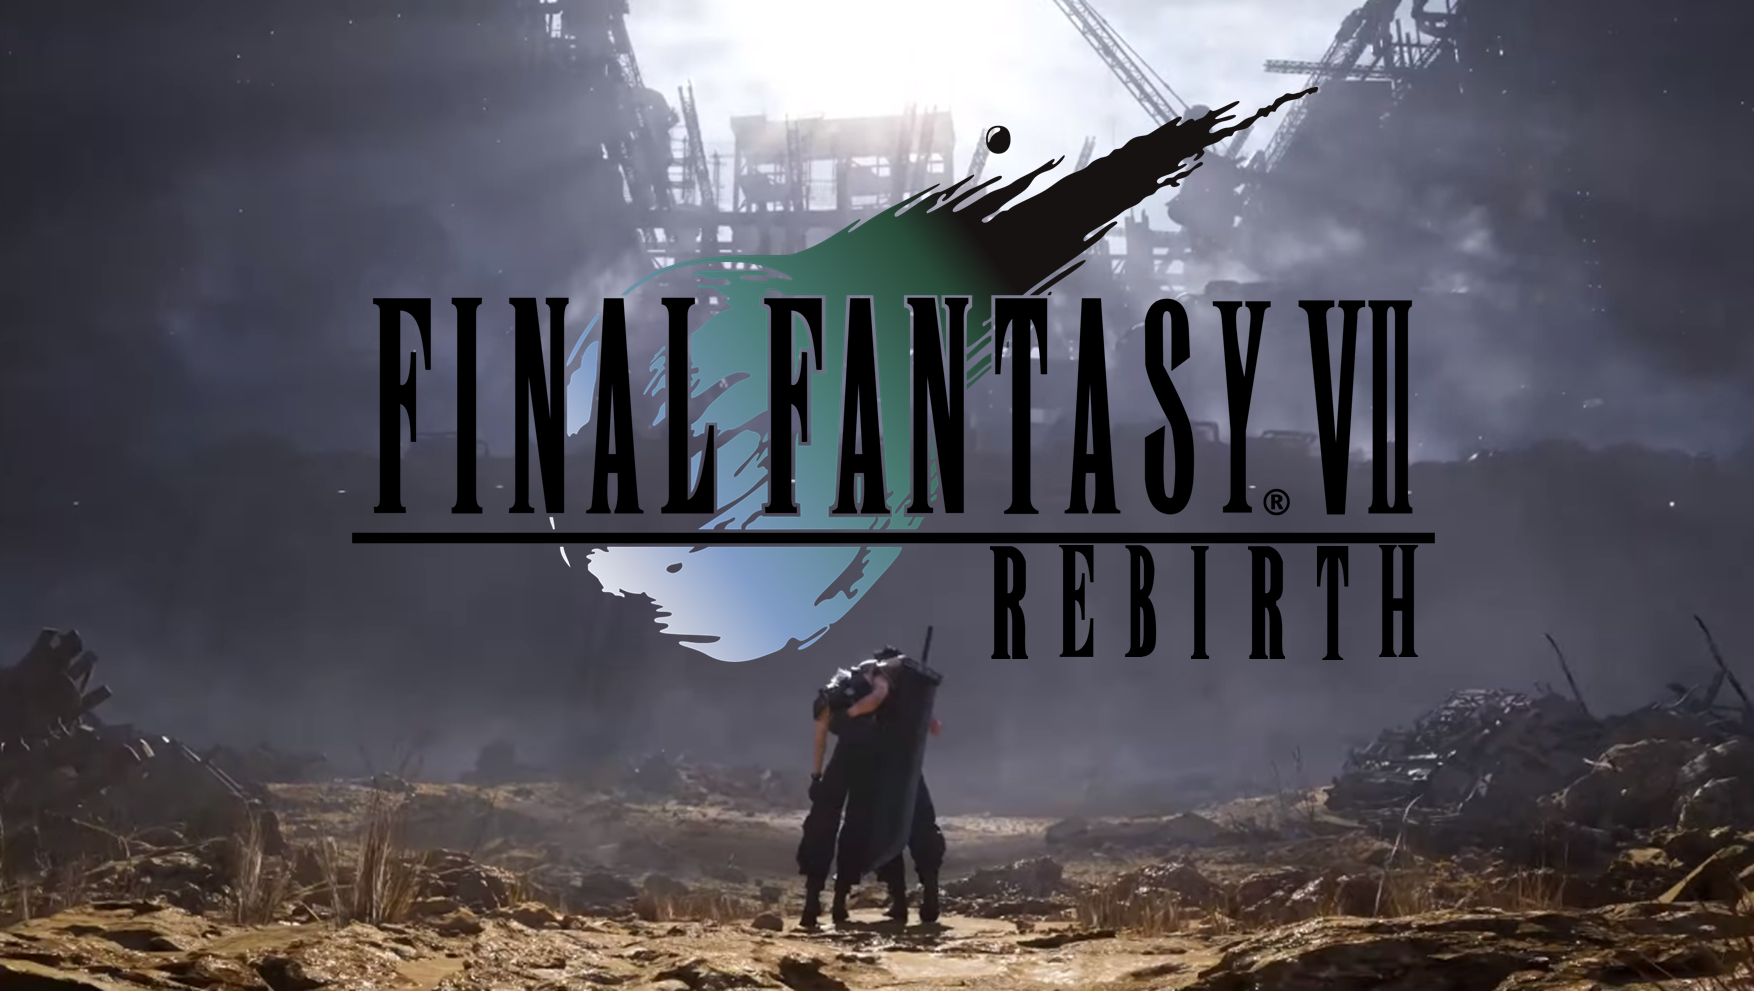 Square Enix opublikowało wersję demonstracyjną gry Final Fantasy VII: Rebirth